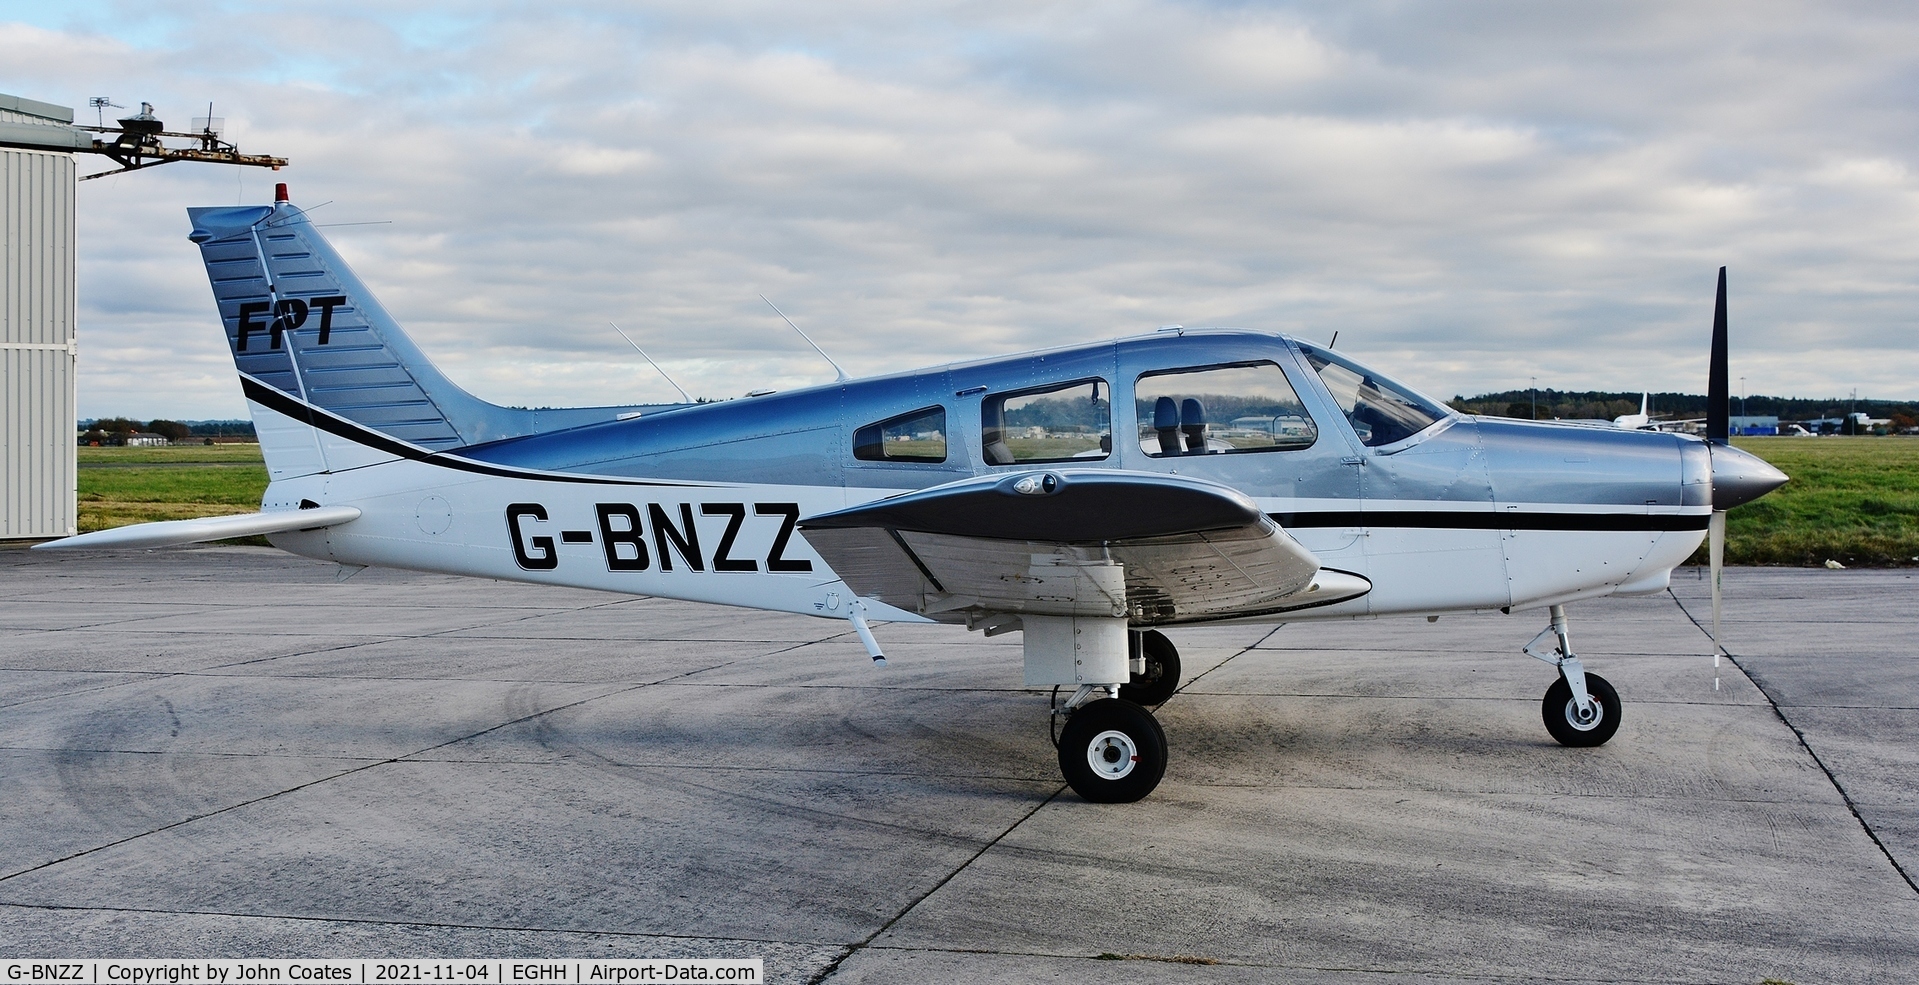 G-BNZZ, 1982 Piper PA-28-161 Cherokee Warrior II C/N 28-8216184, Looking like it is freshly repainted